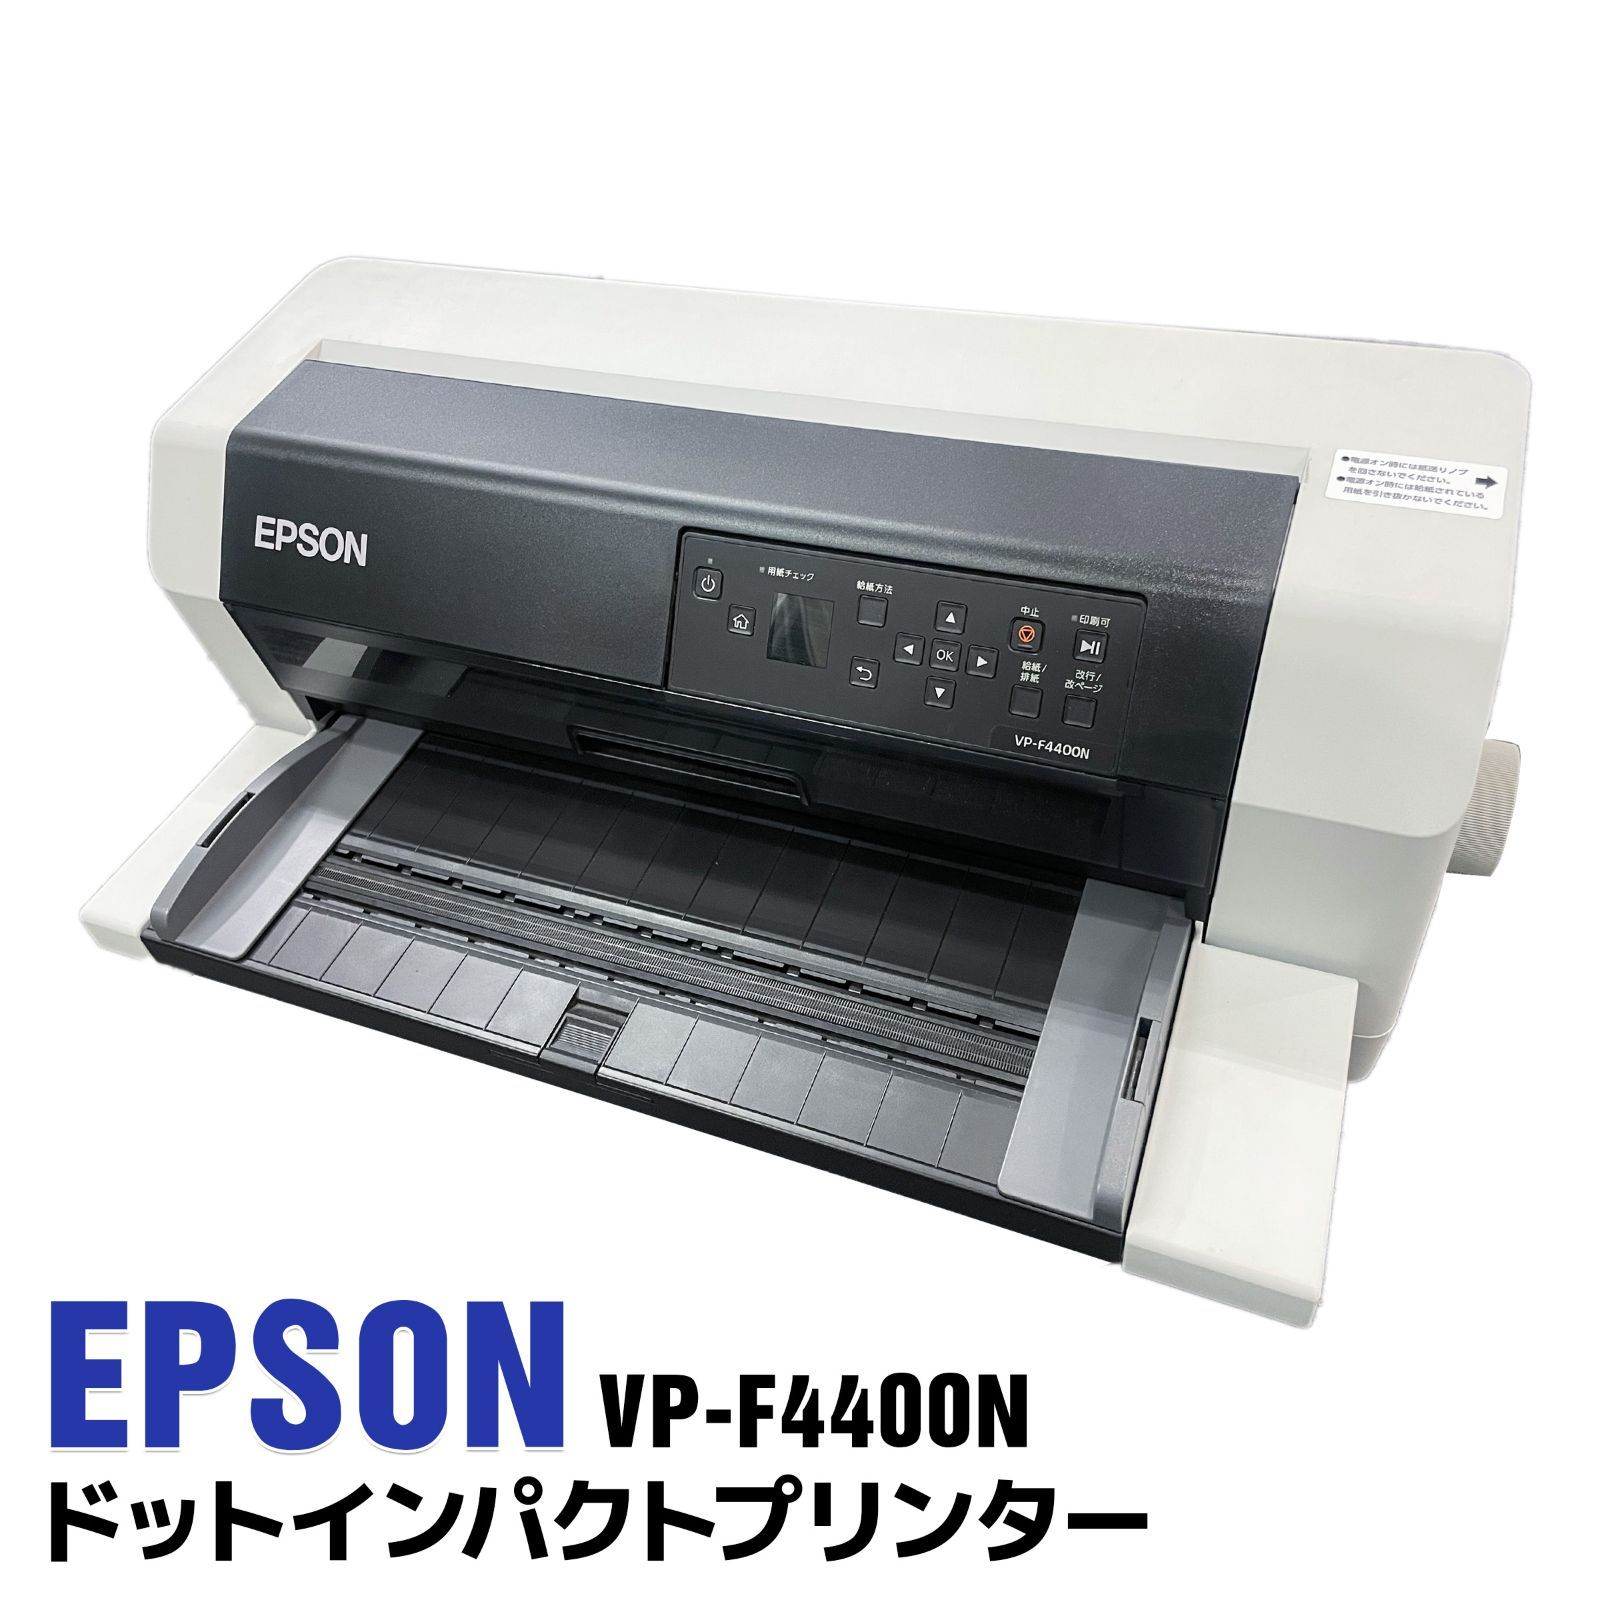 EPSON ドットインパクトプリンター VP-F4400N 136桁 水平型 261字/秒 9